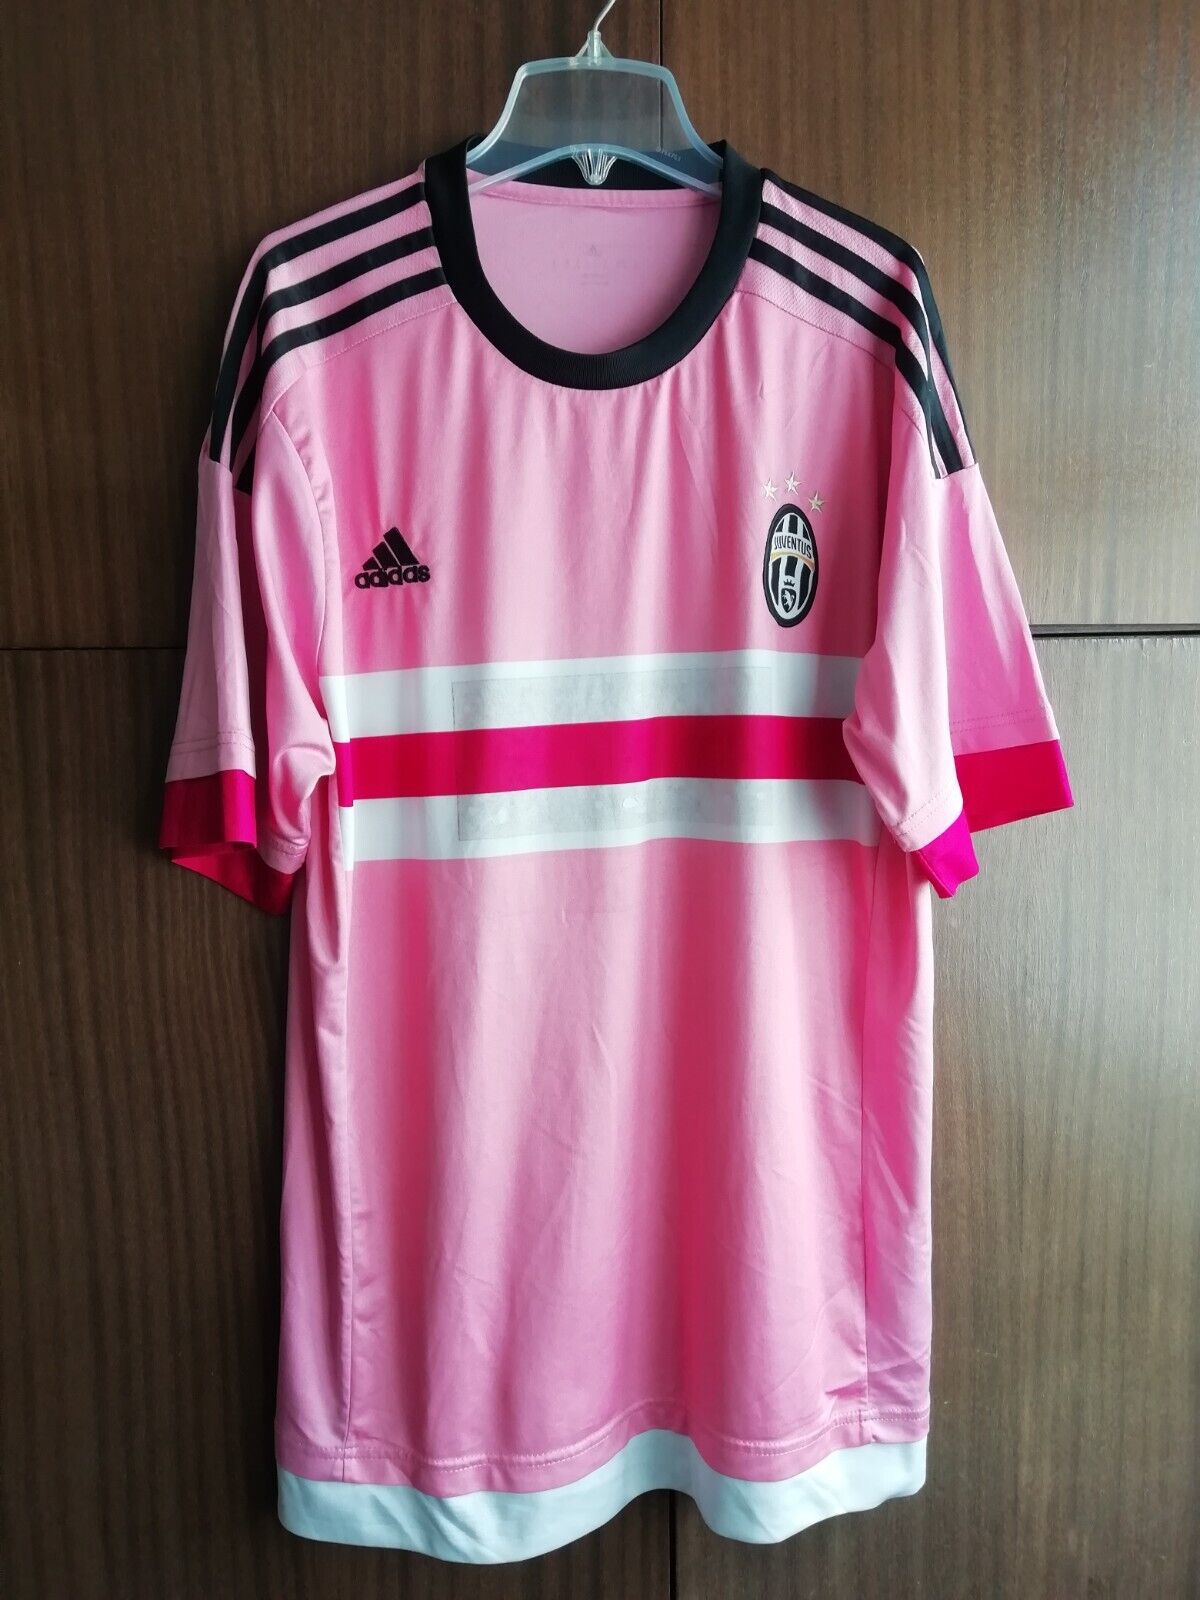 Juventus Away 2015 2016 Adidas XL Shirt Jersey Pink Maglia Football Soccer